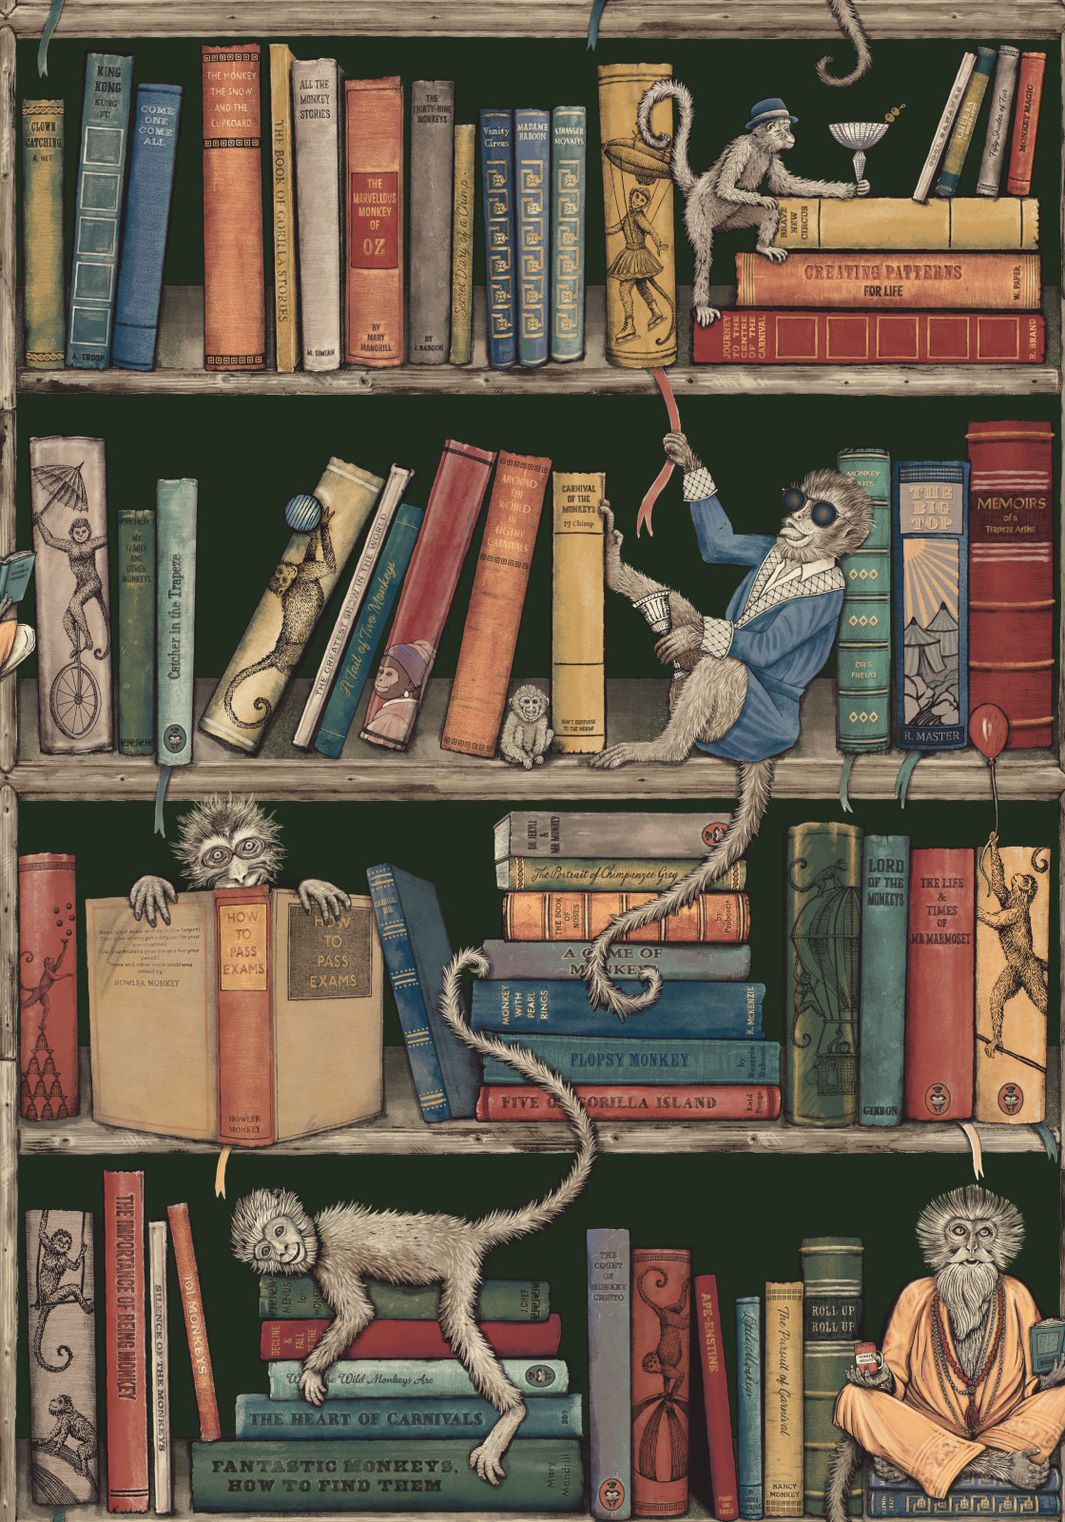 carnival-fever-brand-mckenzie-monkey-library-reading-shelves